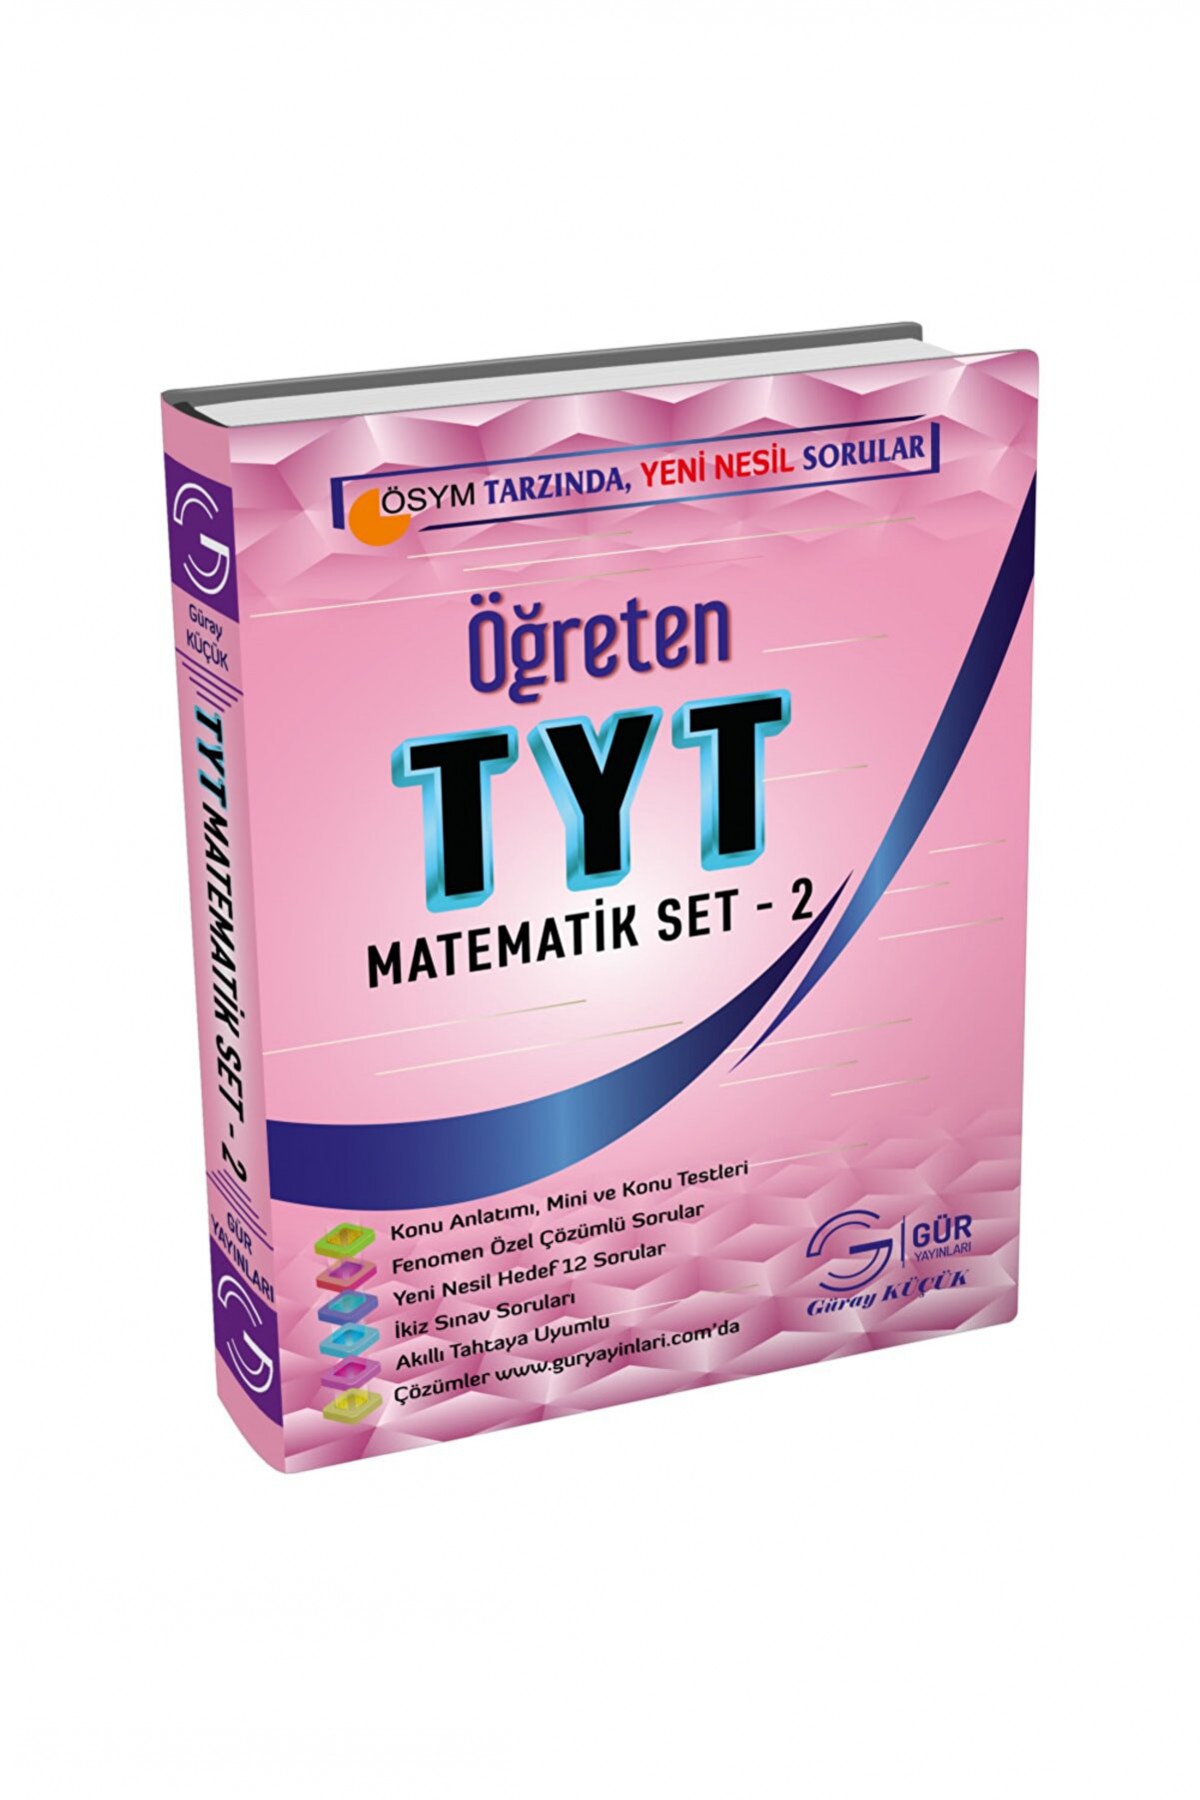 Gür Yayınları Öğreten Tyt Matematik Set - 2